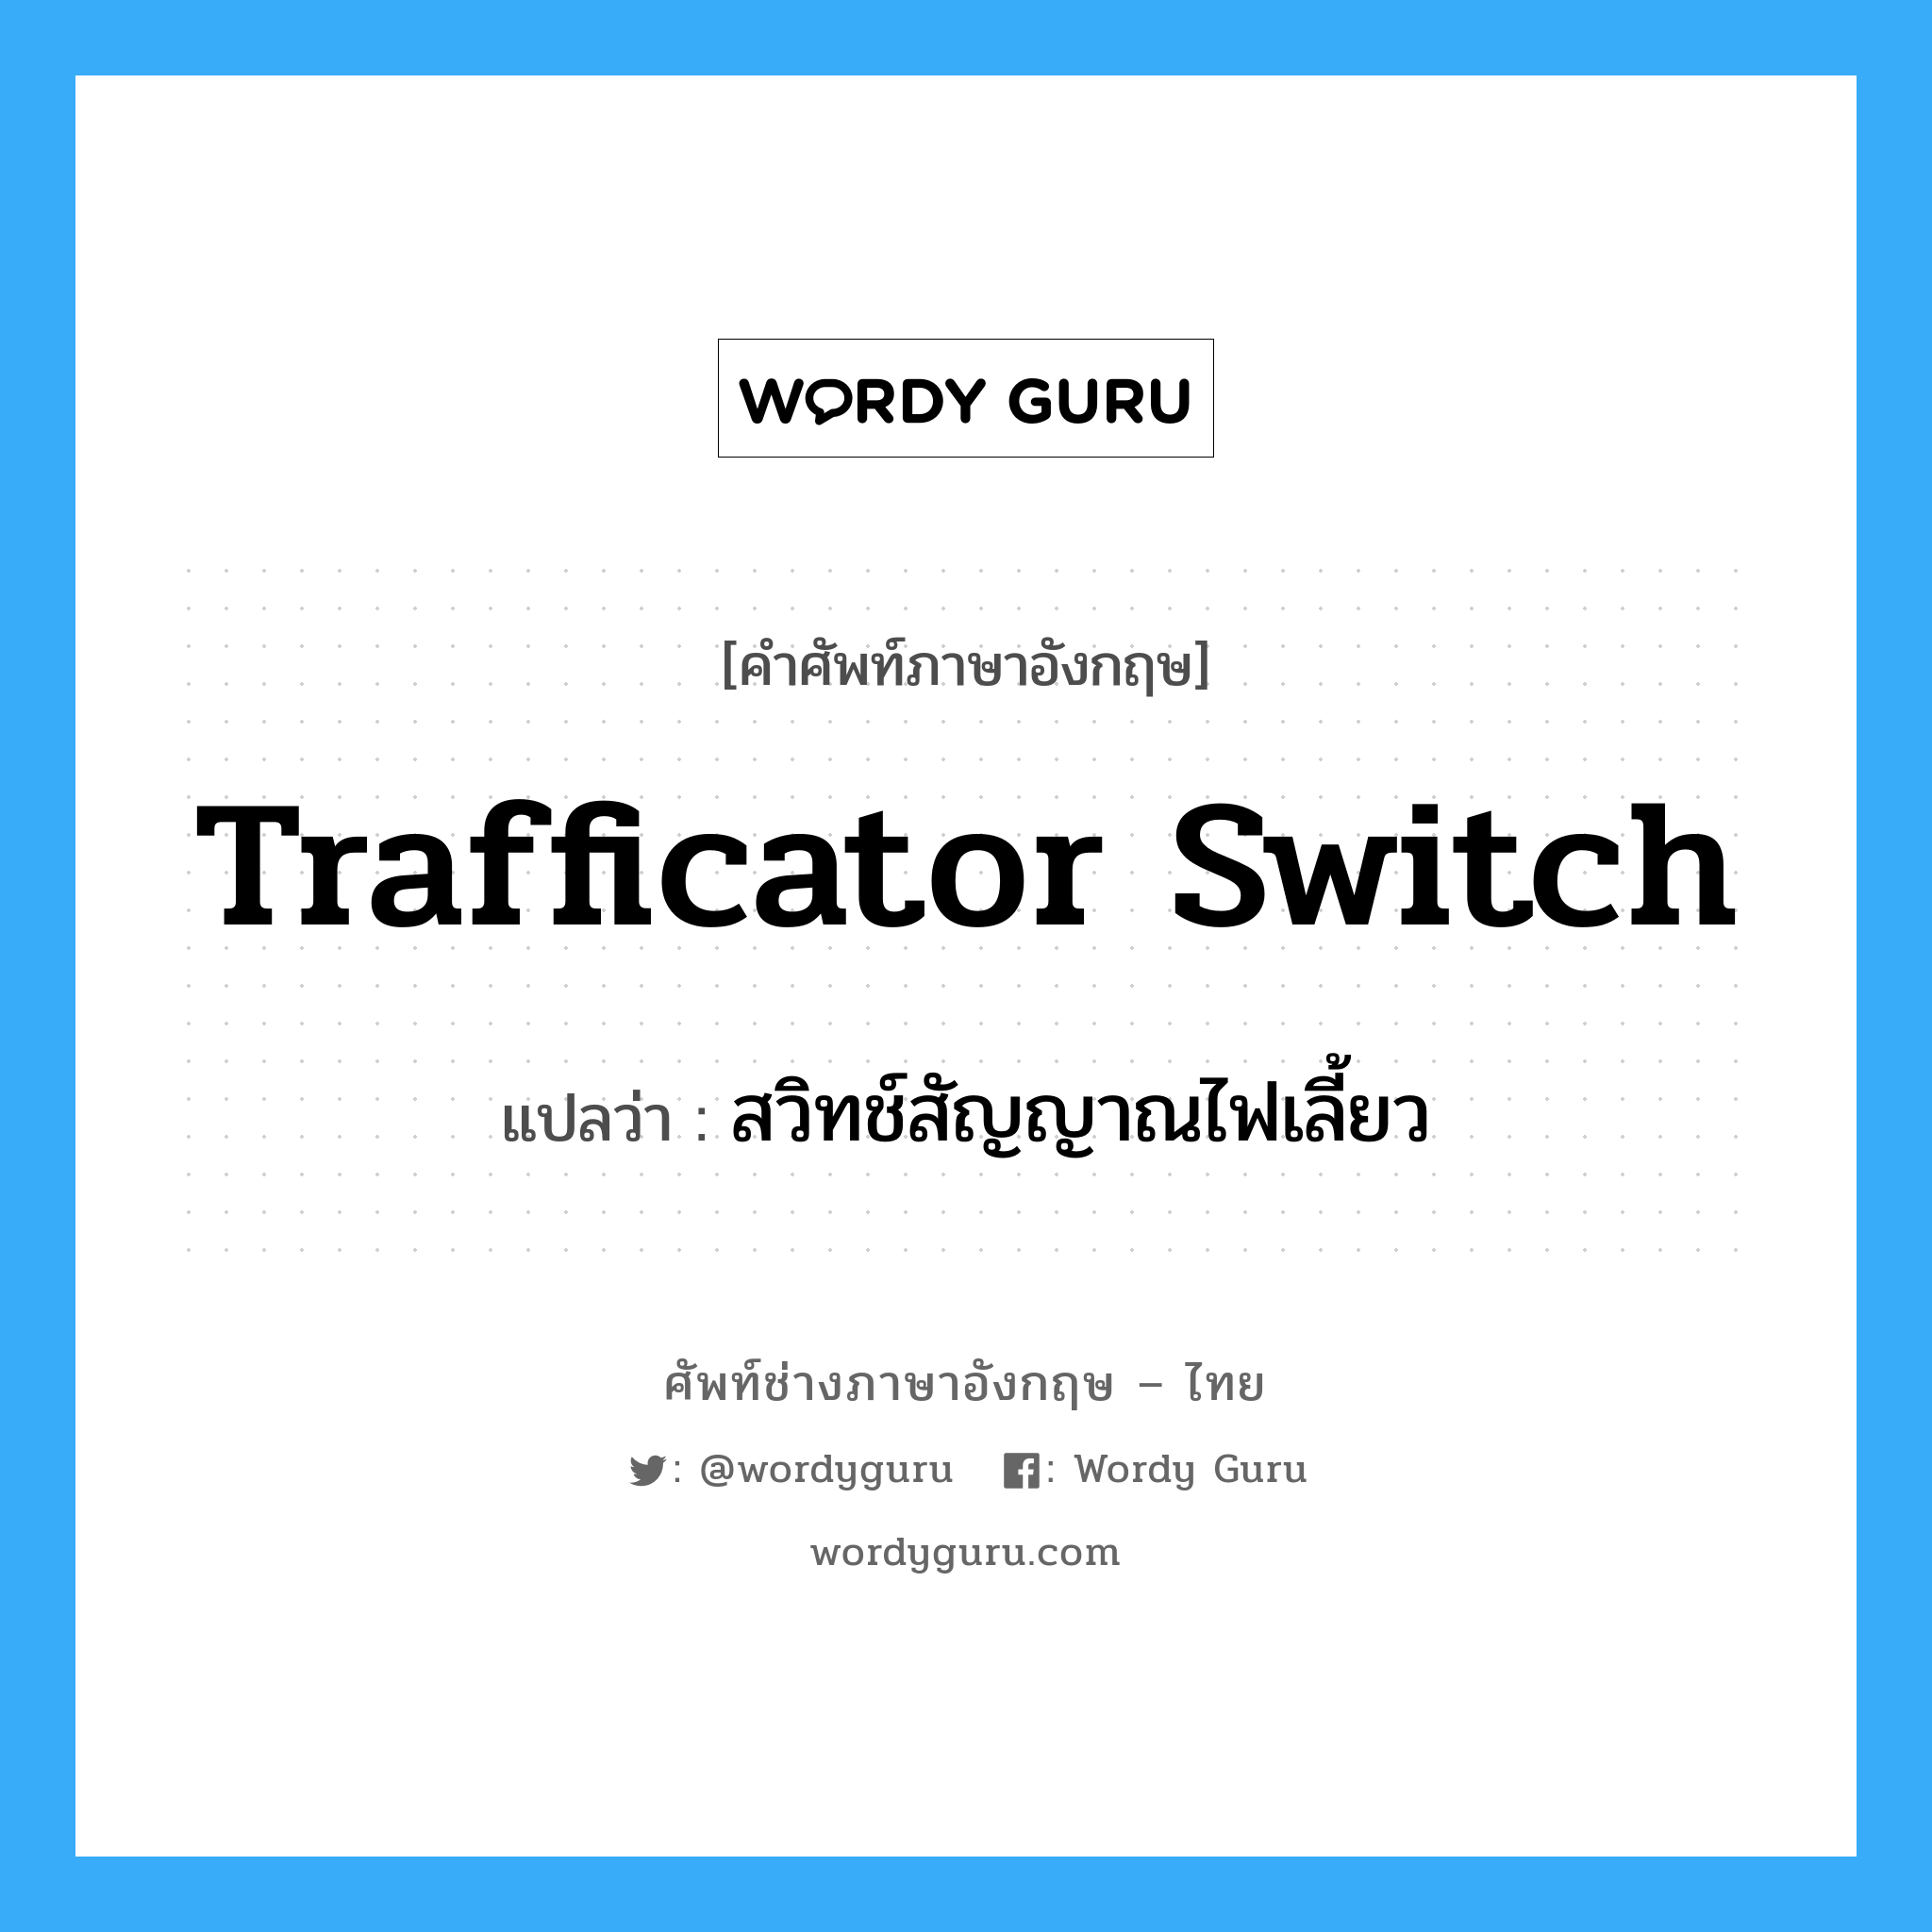 trafficator switch แปลว่า?, คำศัพท์ช่างภาษาอังกฤษ - ไทย trafficator switch คำศัพท์ภาษาอังกฤษ trafficator switch แปลว่า สวิทช์สัญญาณไฟเลี้ยว